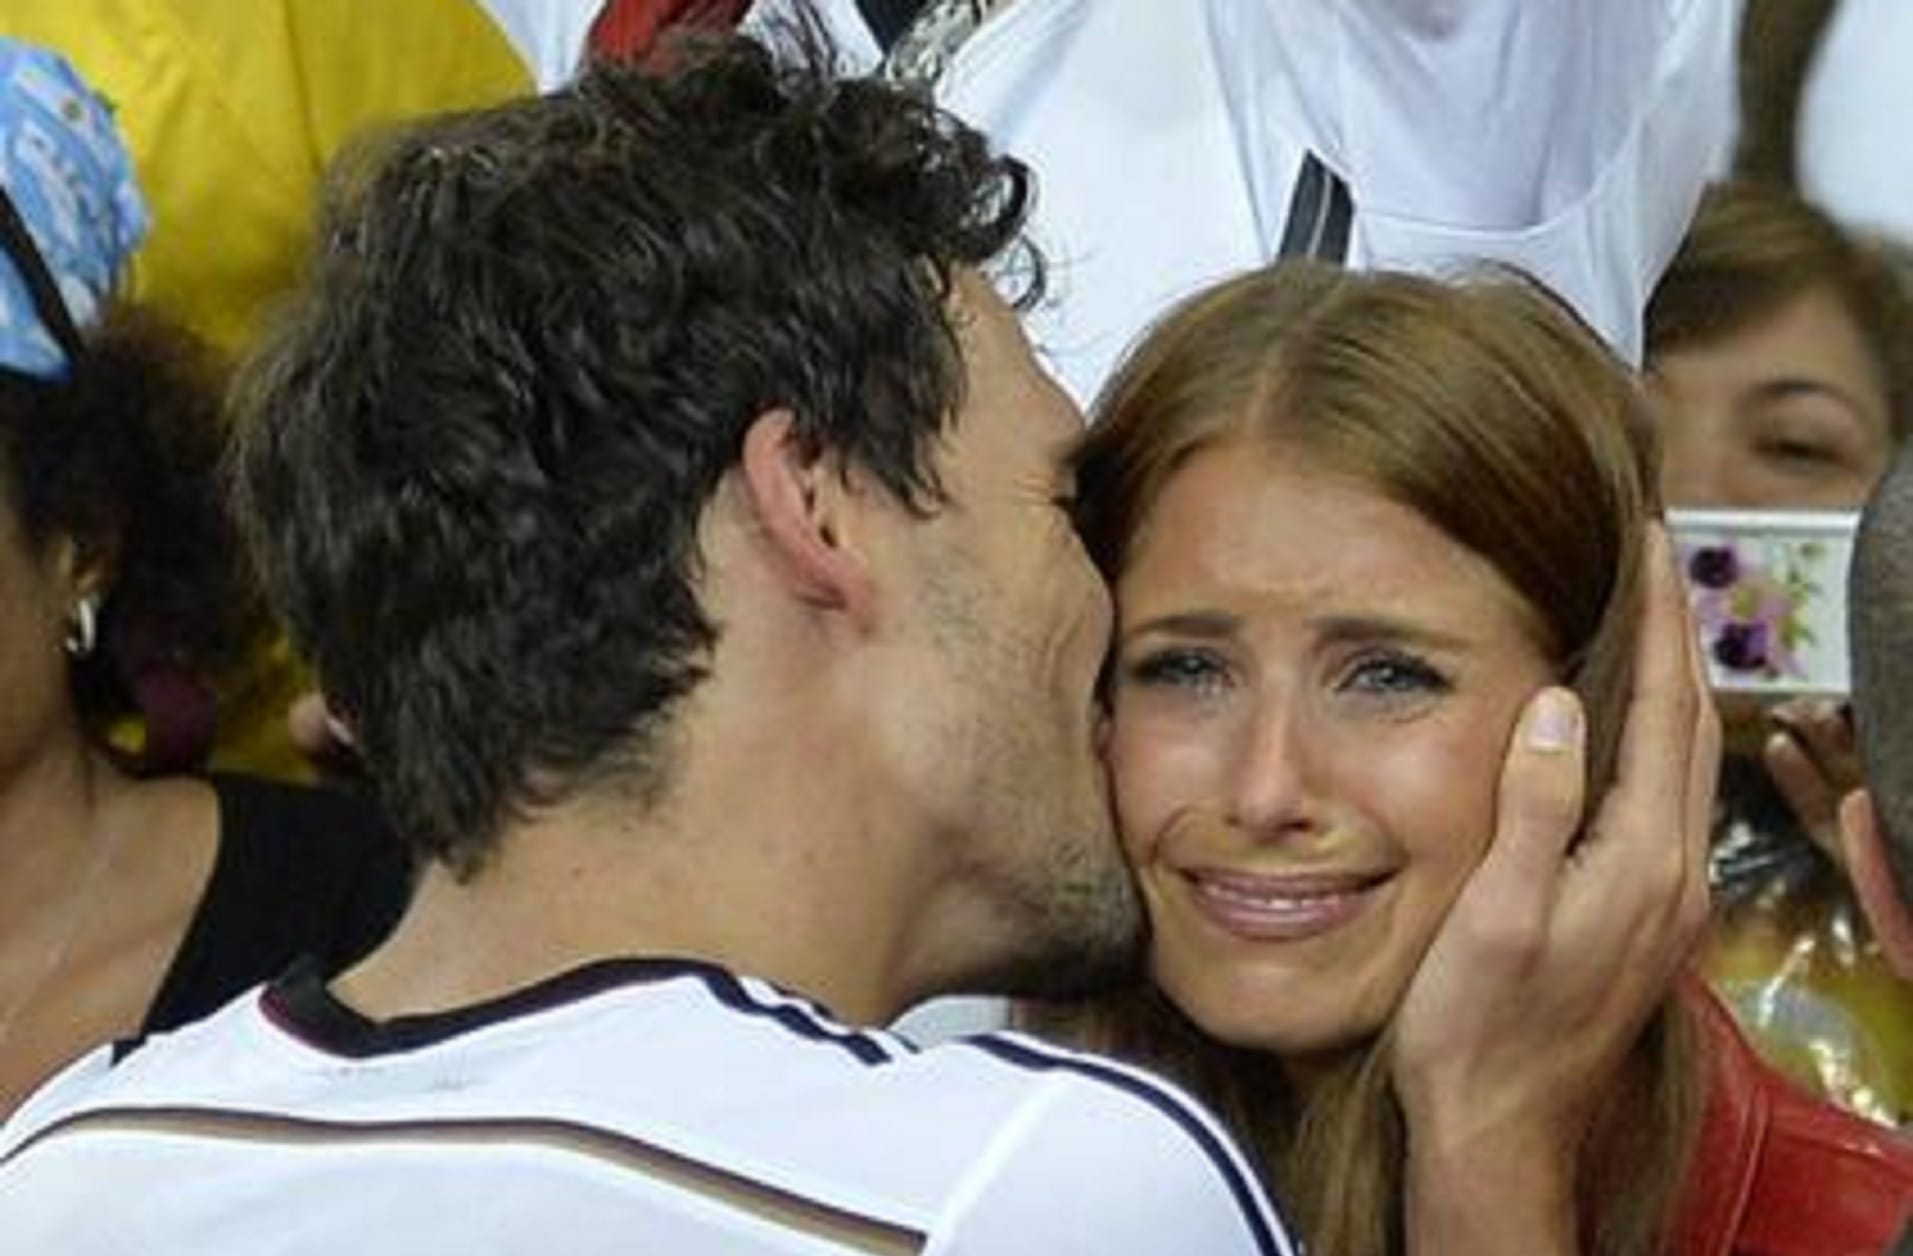 2014: Die Fußballweltmeisterschaft in Brasilien war für alle emotional. Auch die Influencerin verdrückte einige Tränen nach dem Sieg Deutschlands im großen Finale.